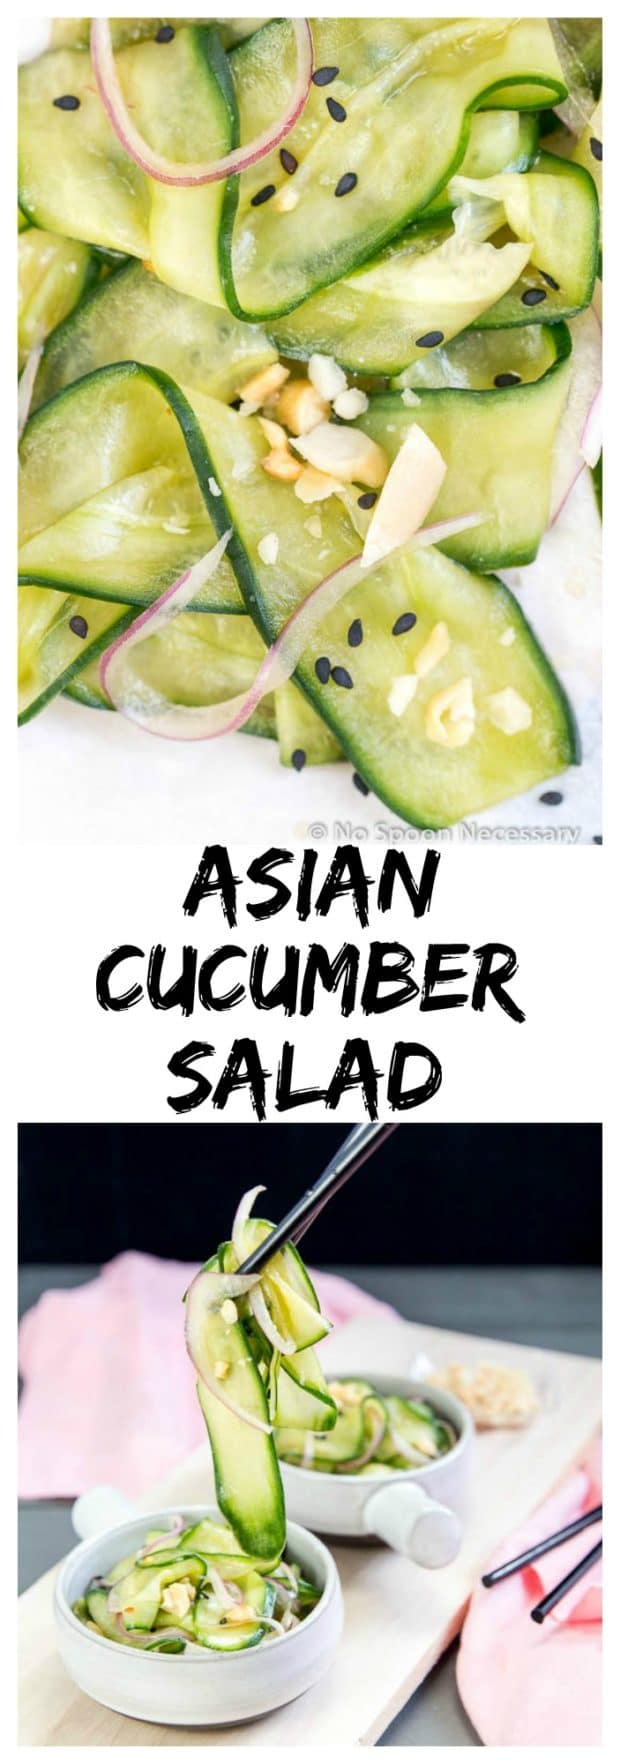 Asian Cucumber Salad long pin